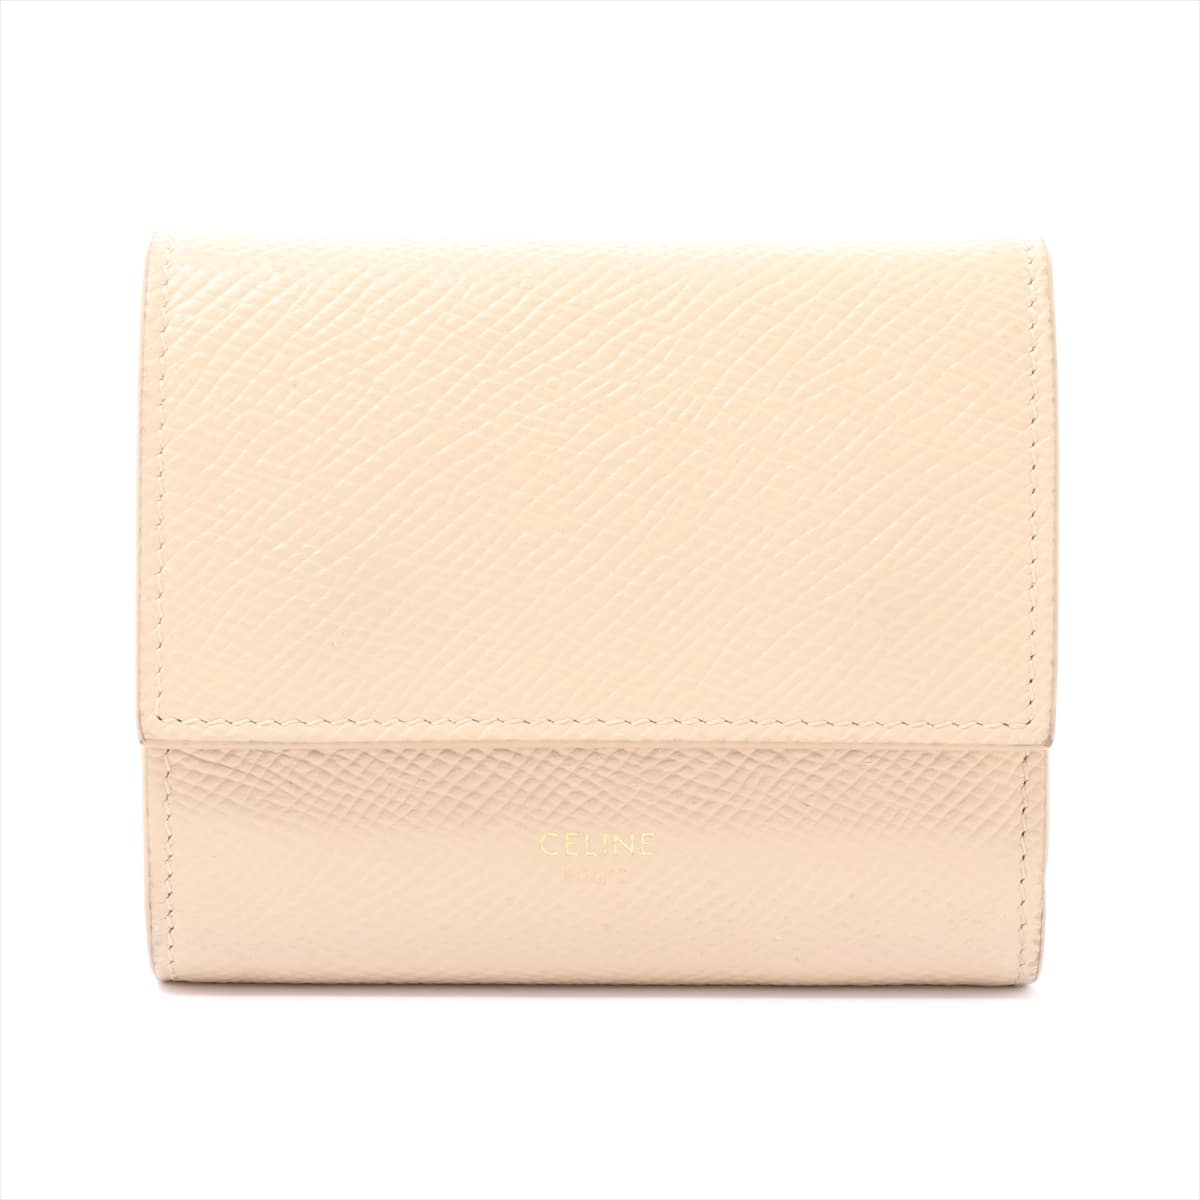 CELINE Small Tri-Fold Leather Wallet Beige